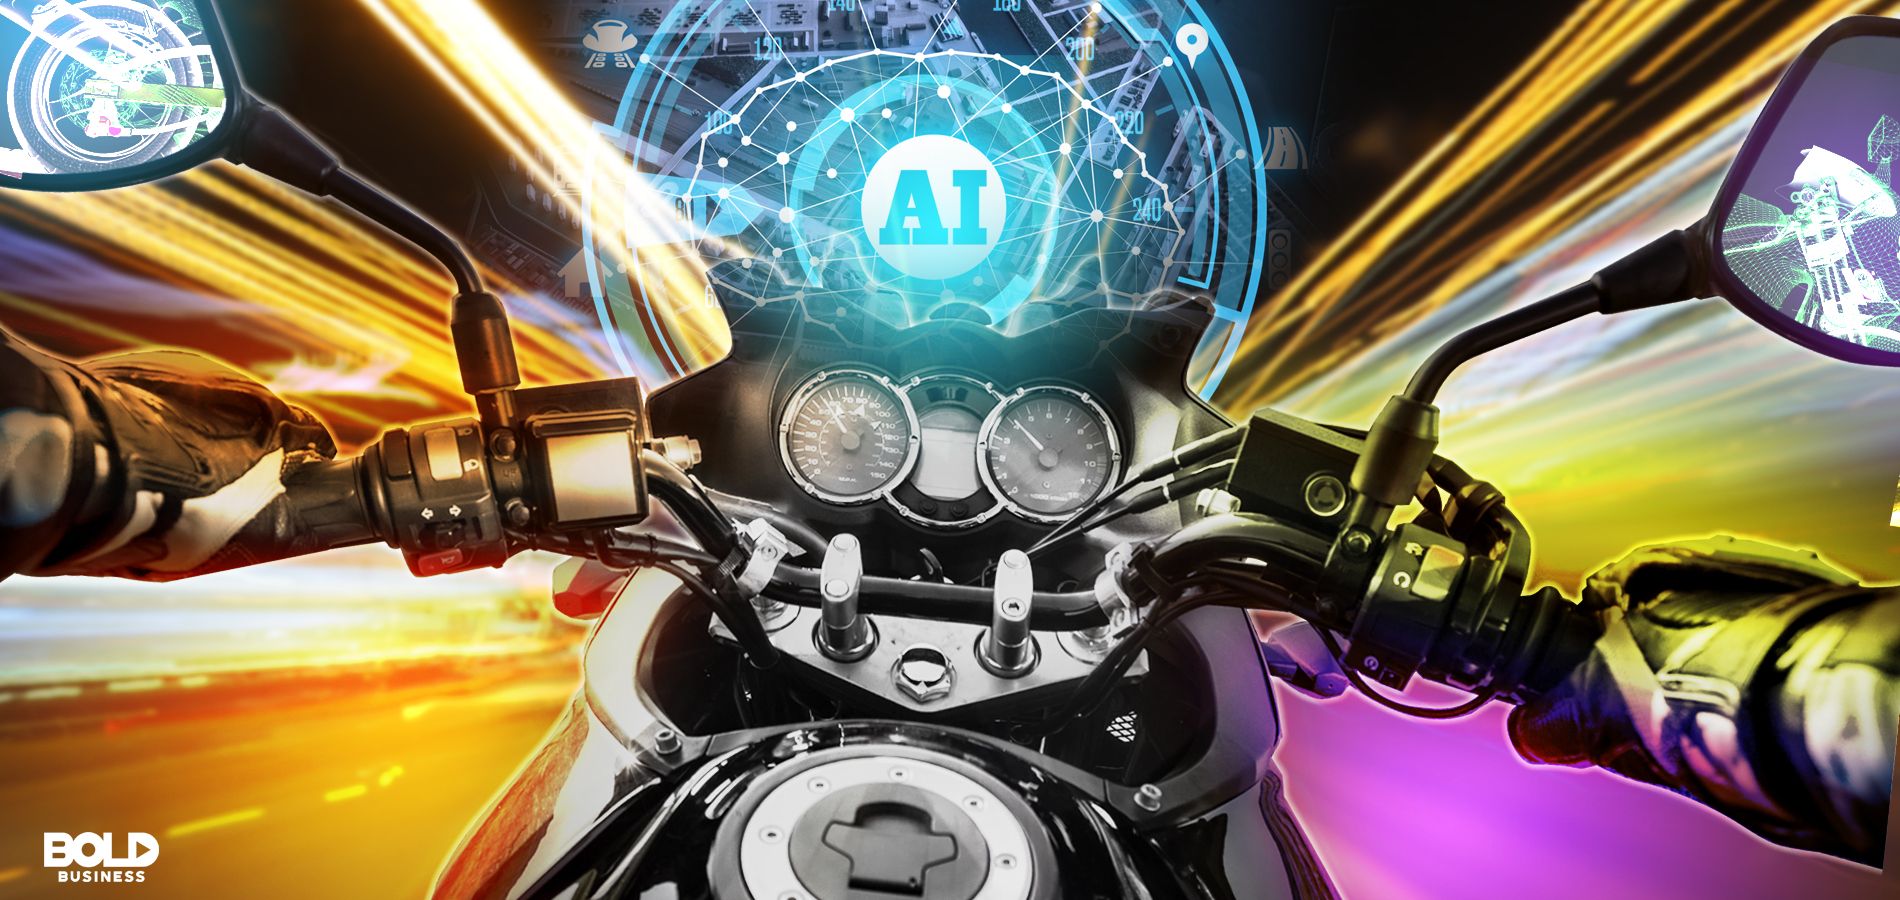 autonomous motorcycle driving towards AI